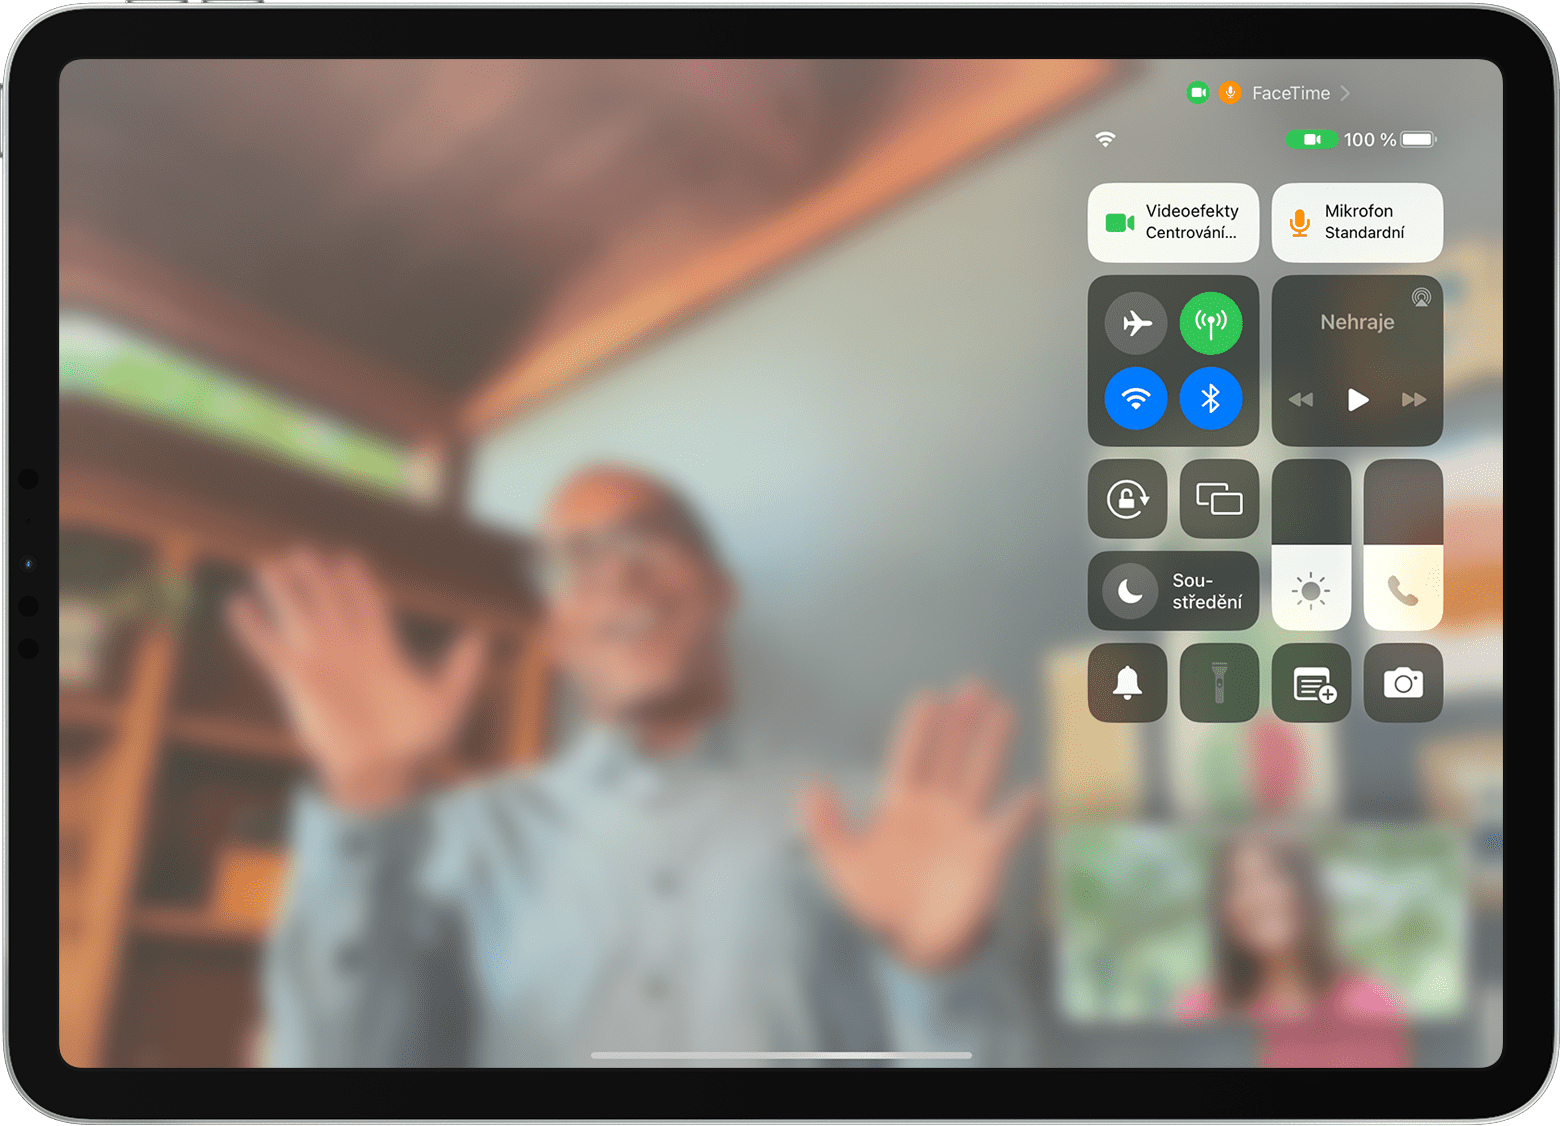 Obrazovka iPadu zobrazující hovor přes FaceTime se zobrazeným Ovládacím centrem, včetně tlačítka Videoefekty